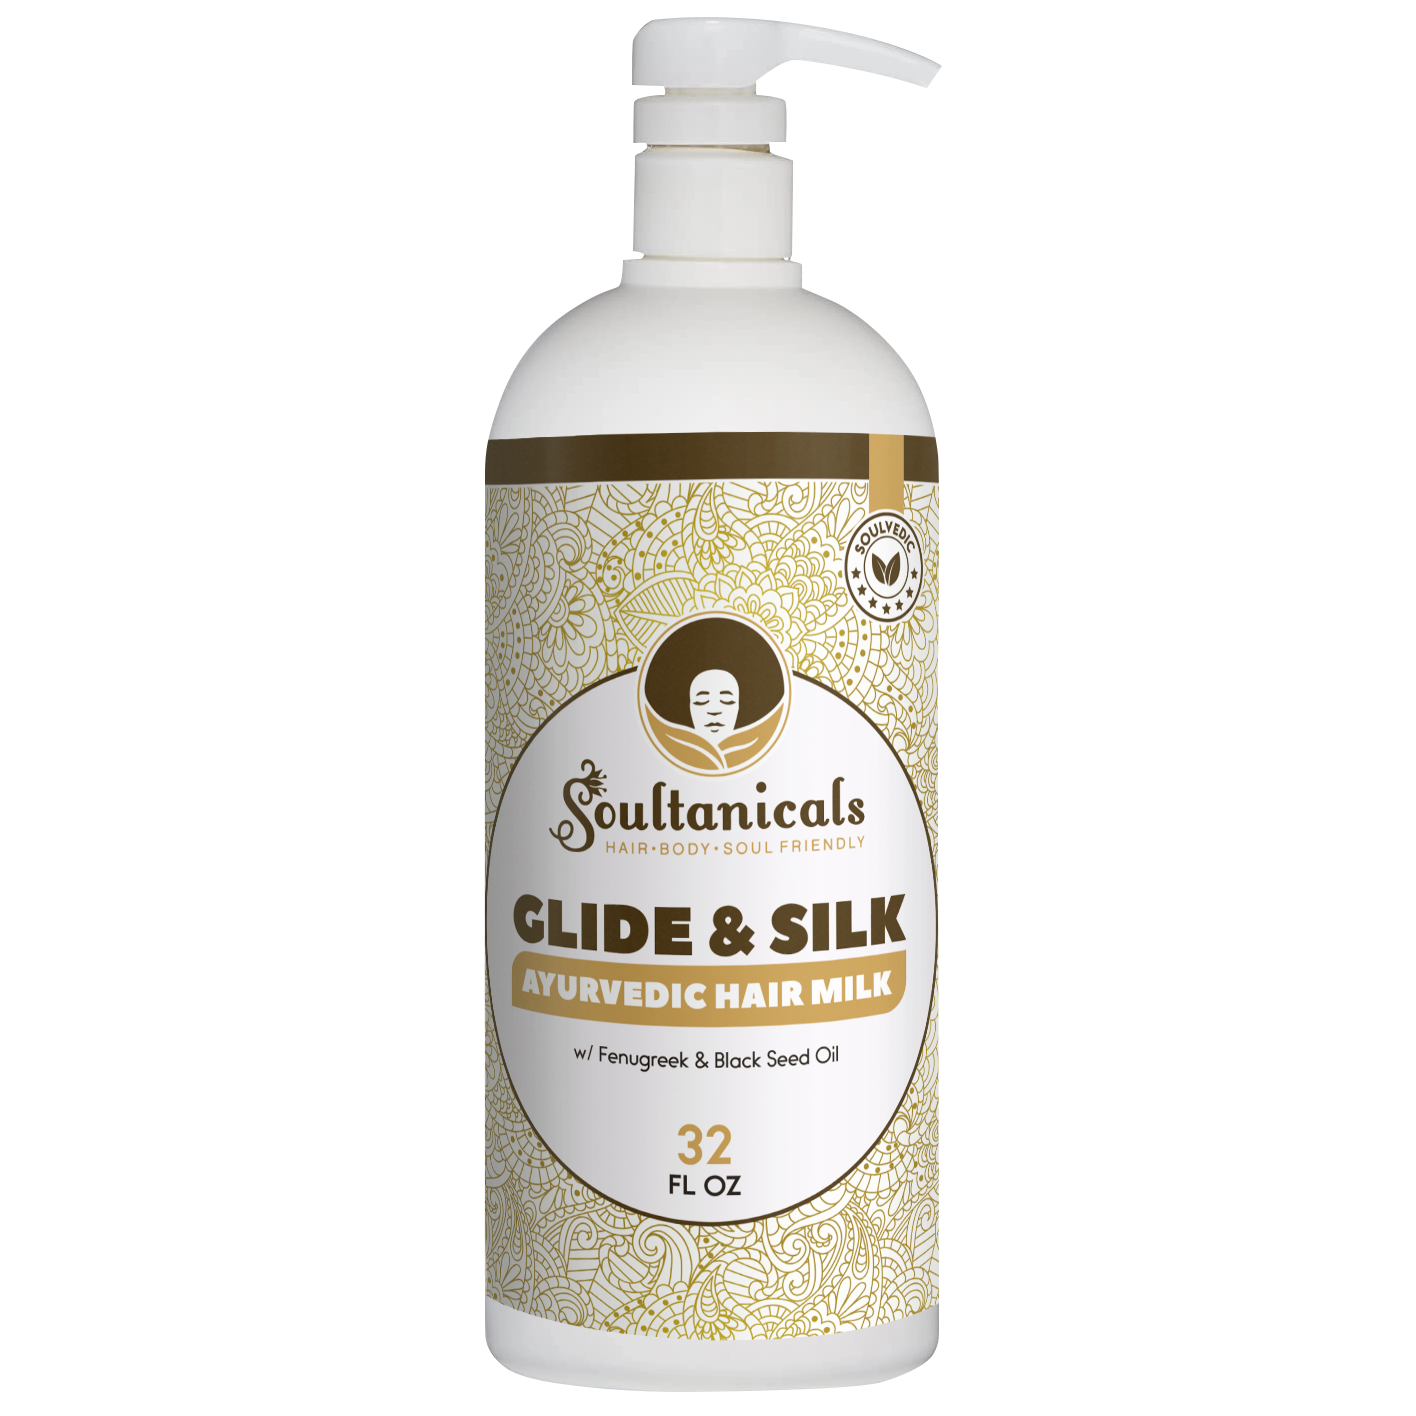 Glide & Silk, Ayurvedic Hair Milk- SALON SIZE (Ships by 5/24)